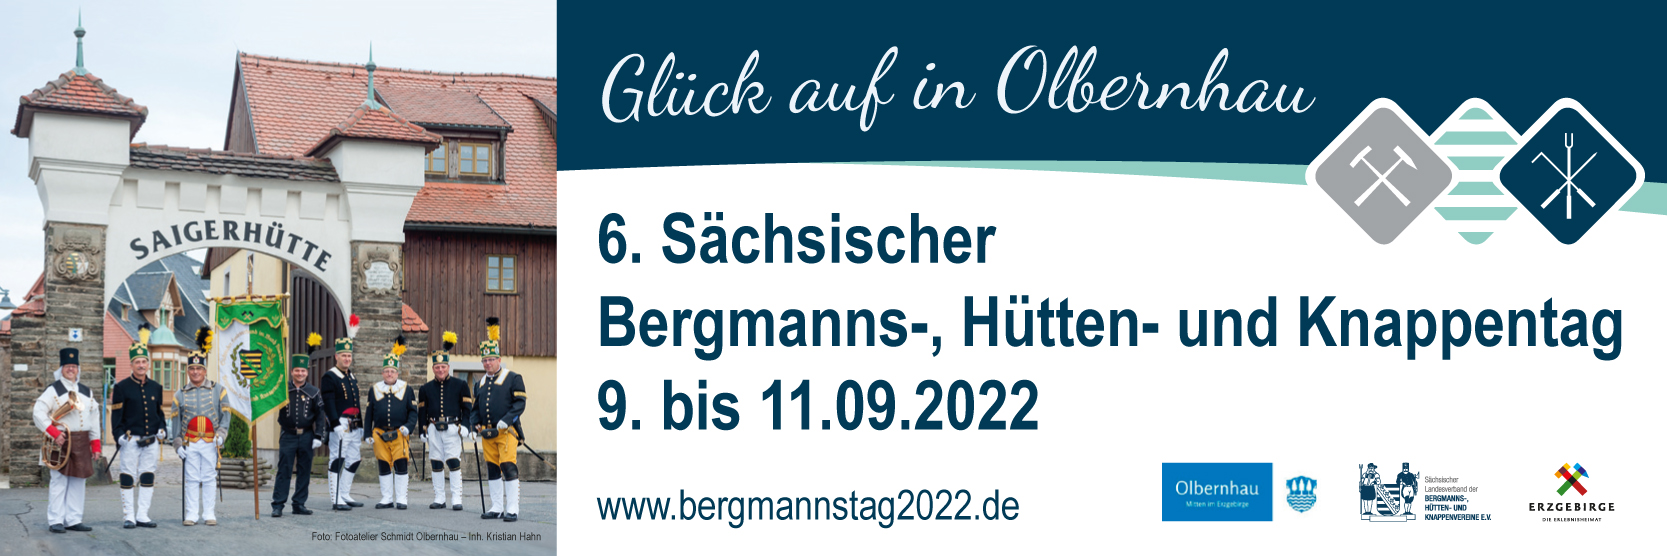 6. Sächsischer Bergmanns-, Hütten- und Knappentag vom 9. bis 11. September 2022 in Olbernhau